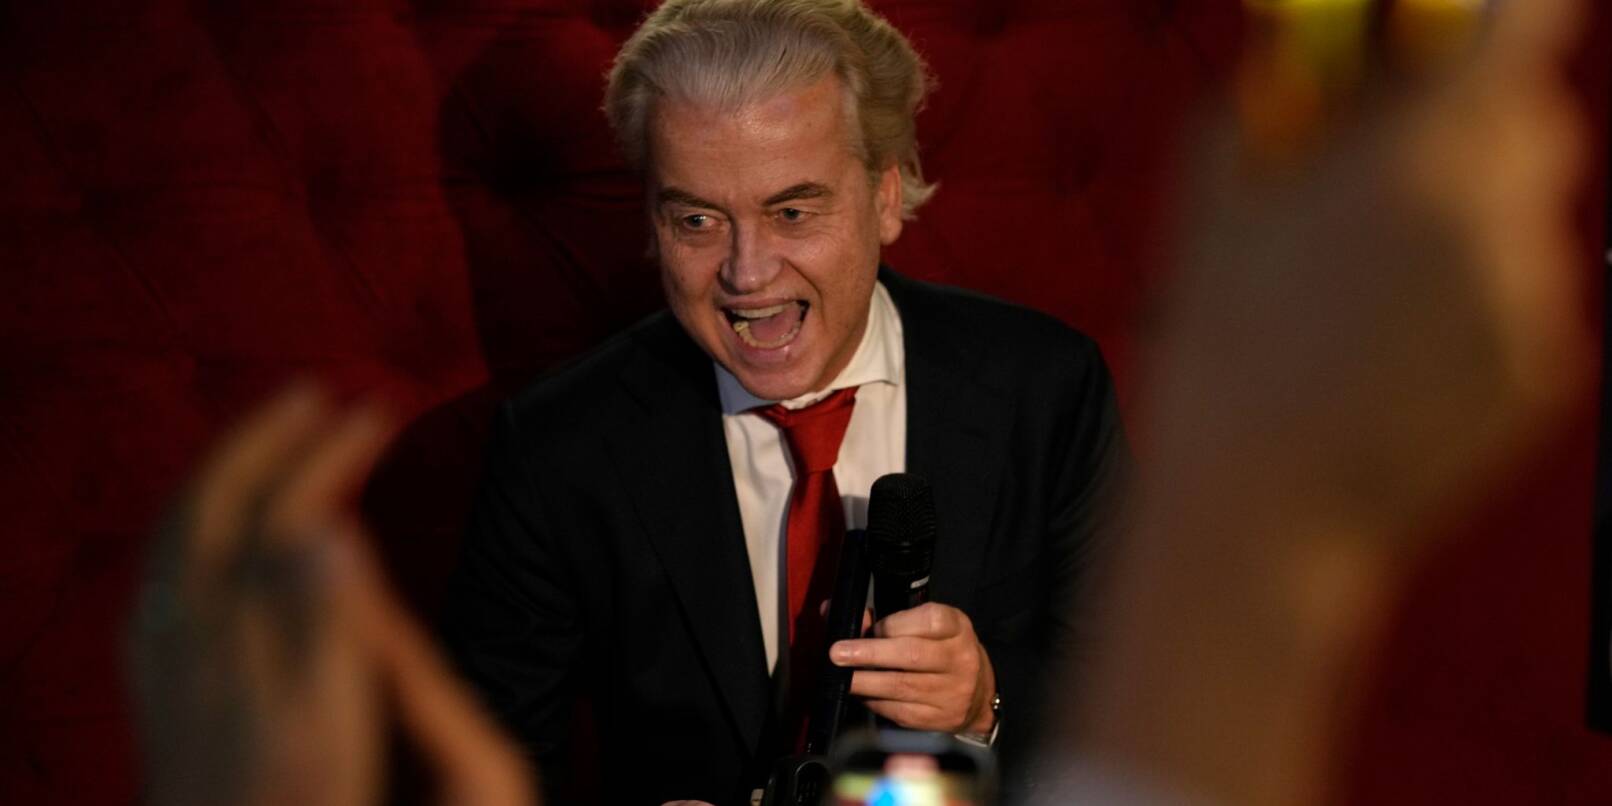 PVV-Chef Geert Wilders wird nach Bekanntgabe der Wahlprognose in Den Haag von Anhängern gefeiert.